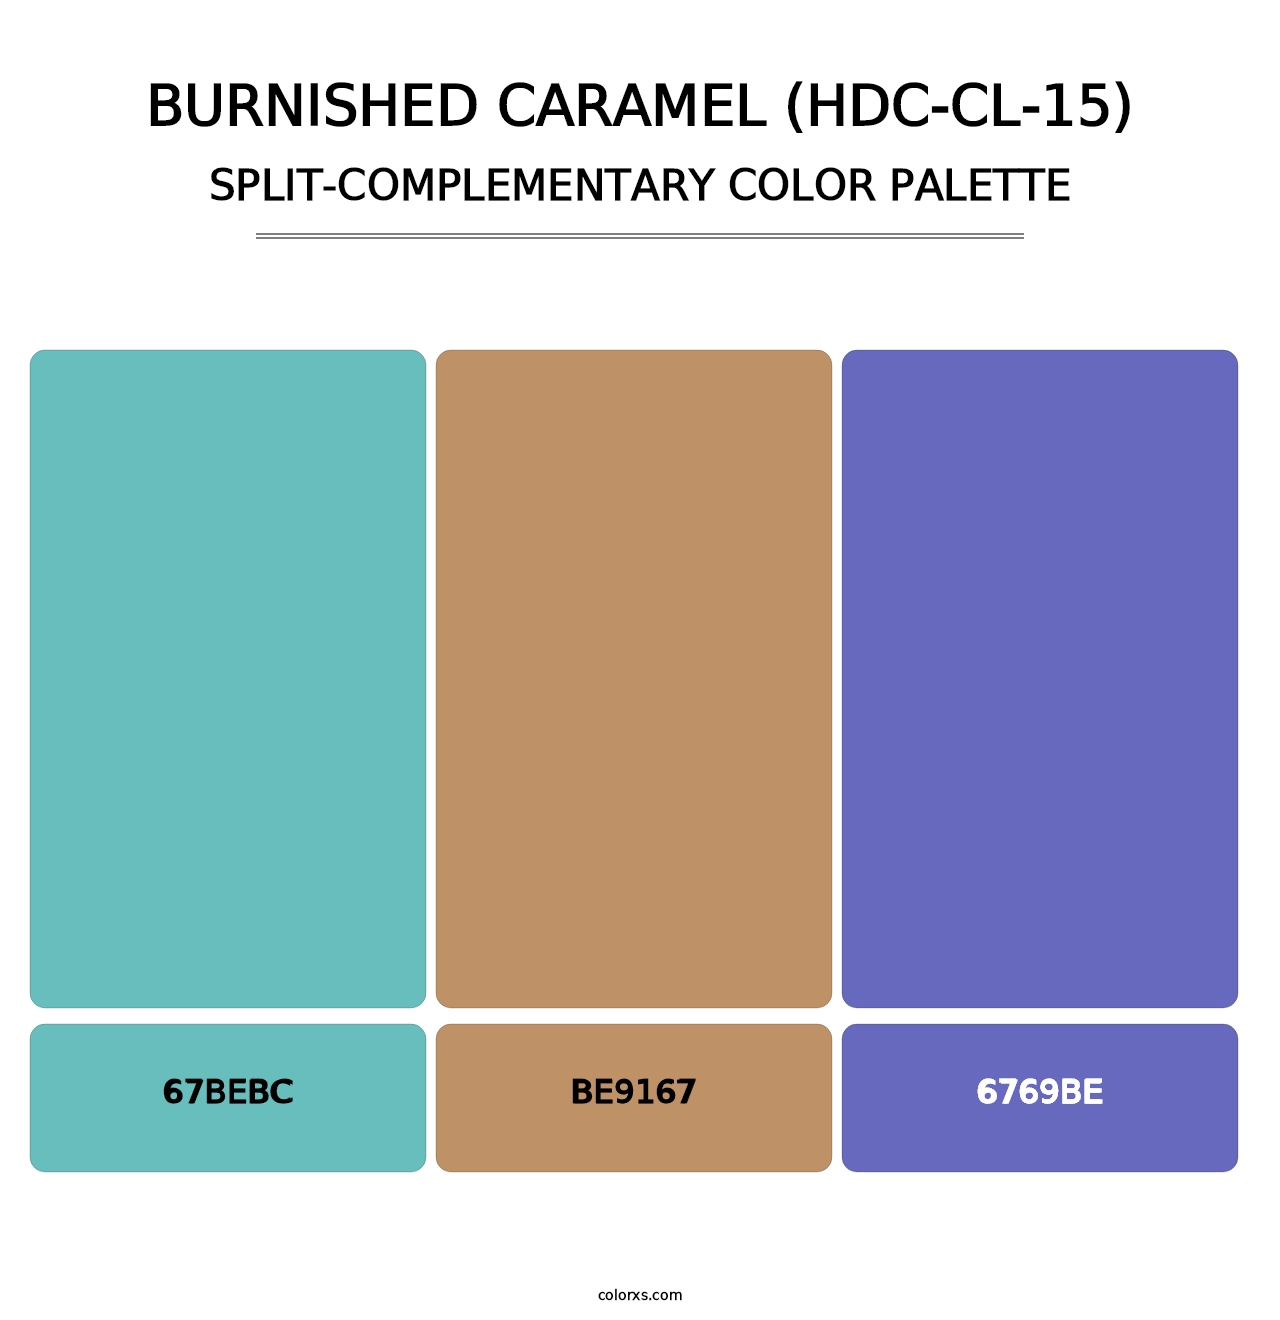 Burnished Caramel (HDC-CL-15) - Split-Complementary Color Palette